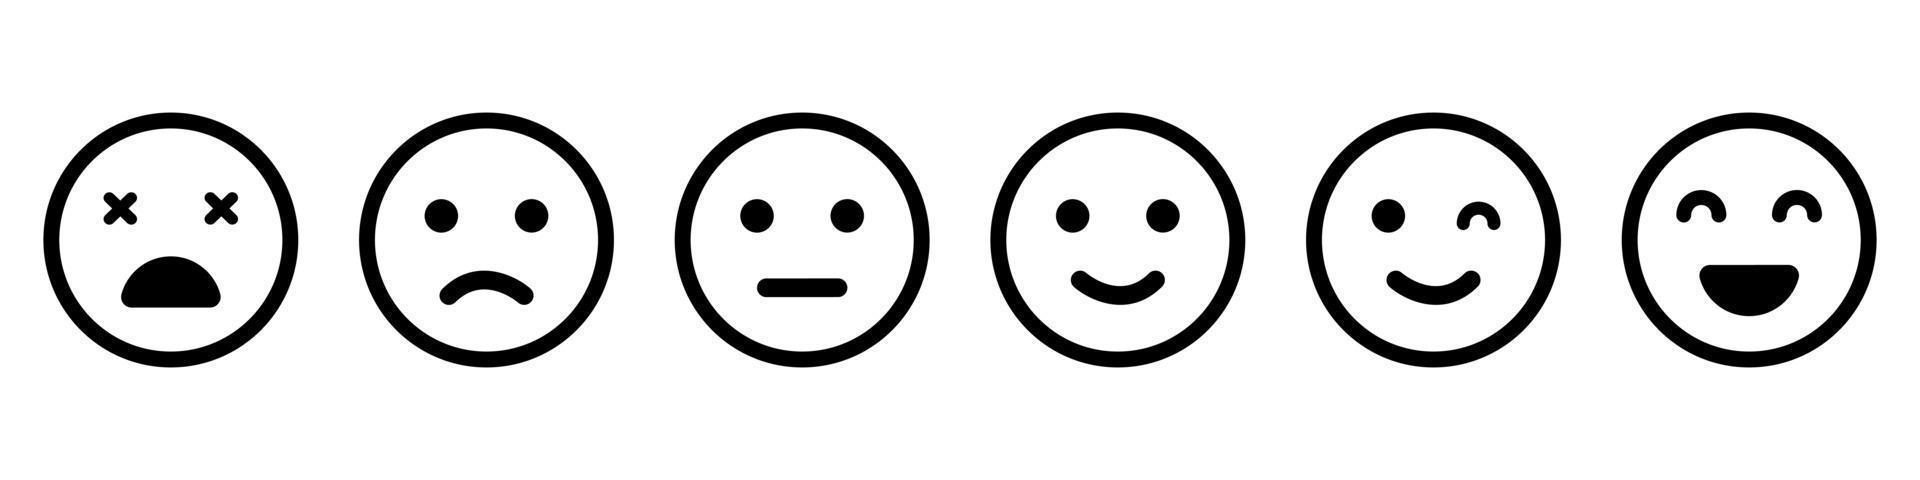 Emoticons-Linie-Icon-Set. positives, glückliches, lächeln, trauriges, unglückliches gesichterpiktogramm. einfache Emoji-Sammlung. Kunden-Feedback-Konzept. gute und schlechte Laune. isolierte Vektorillustration. vektor